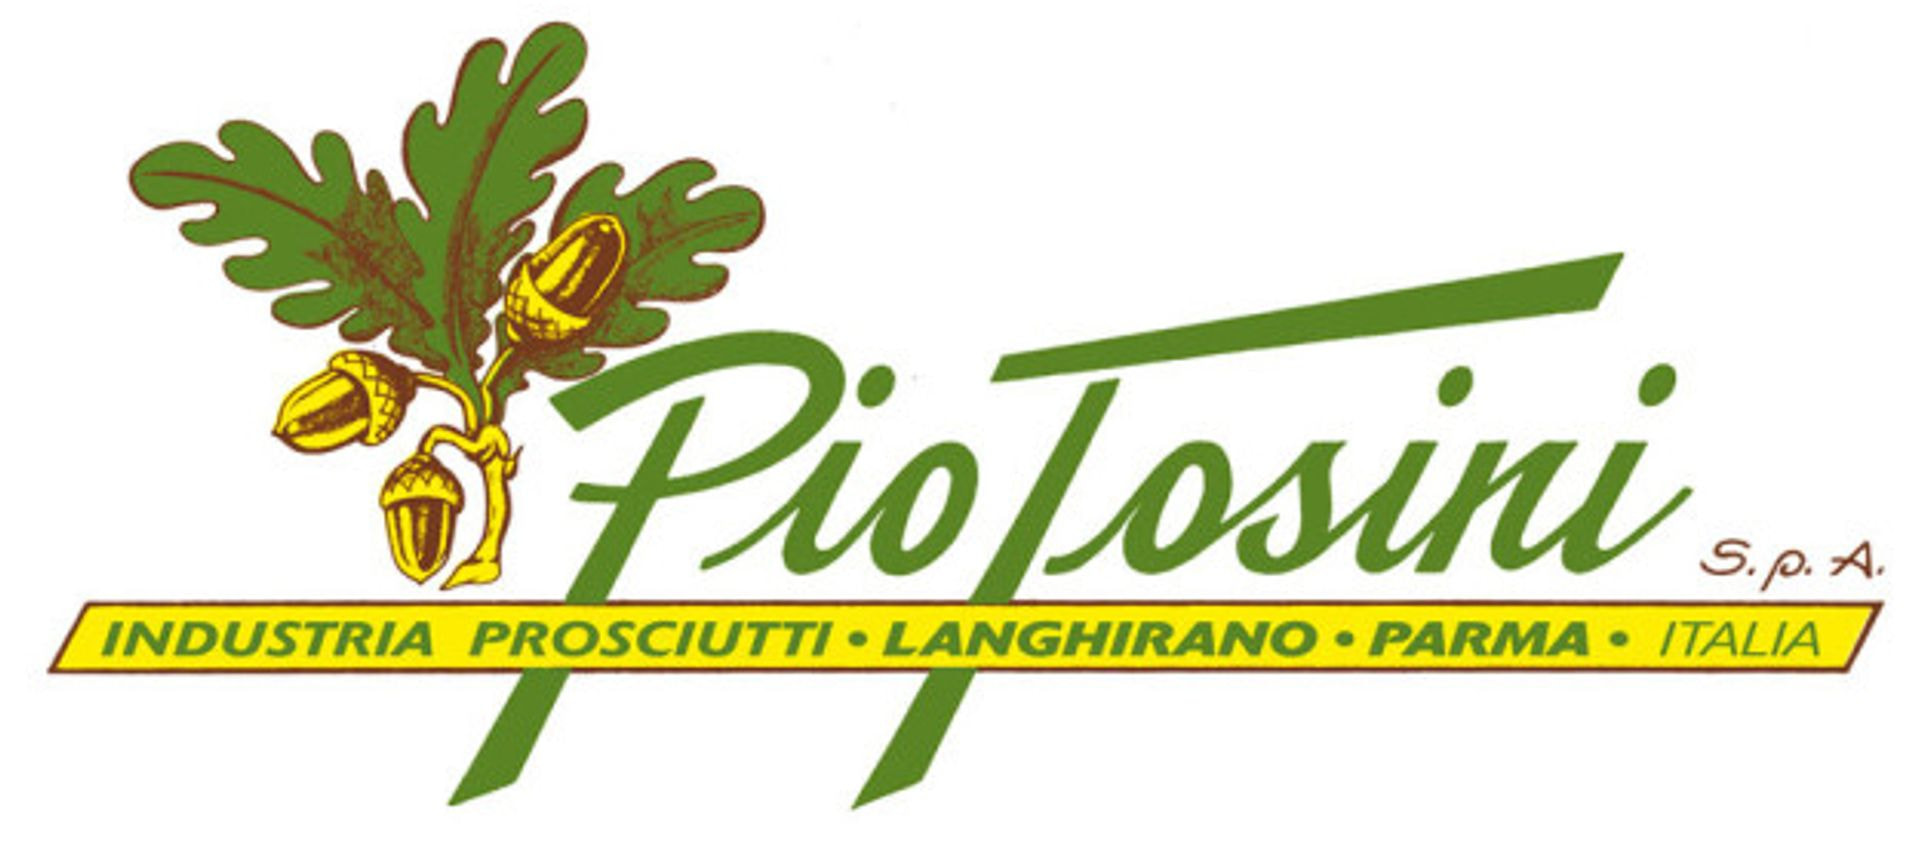 Pio Tosini è stato uno dei pionieri della storia del prosciutto nella vallata di Langhirano, continuando e sviluppando l’attività del padre Ferrante, già impegnato nella macellazione dei suini e nella lavorazione dei salumi tipici alla fine del 1800.